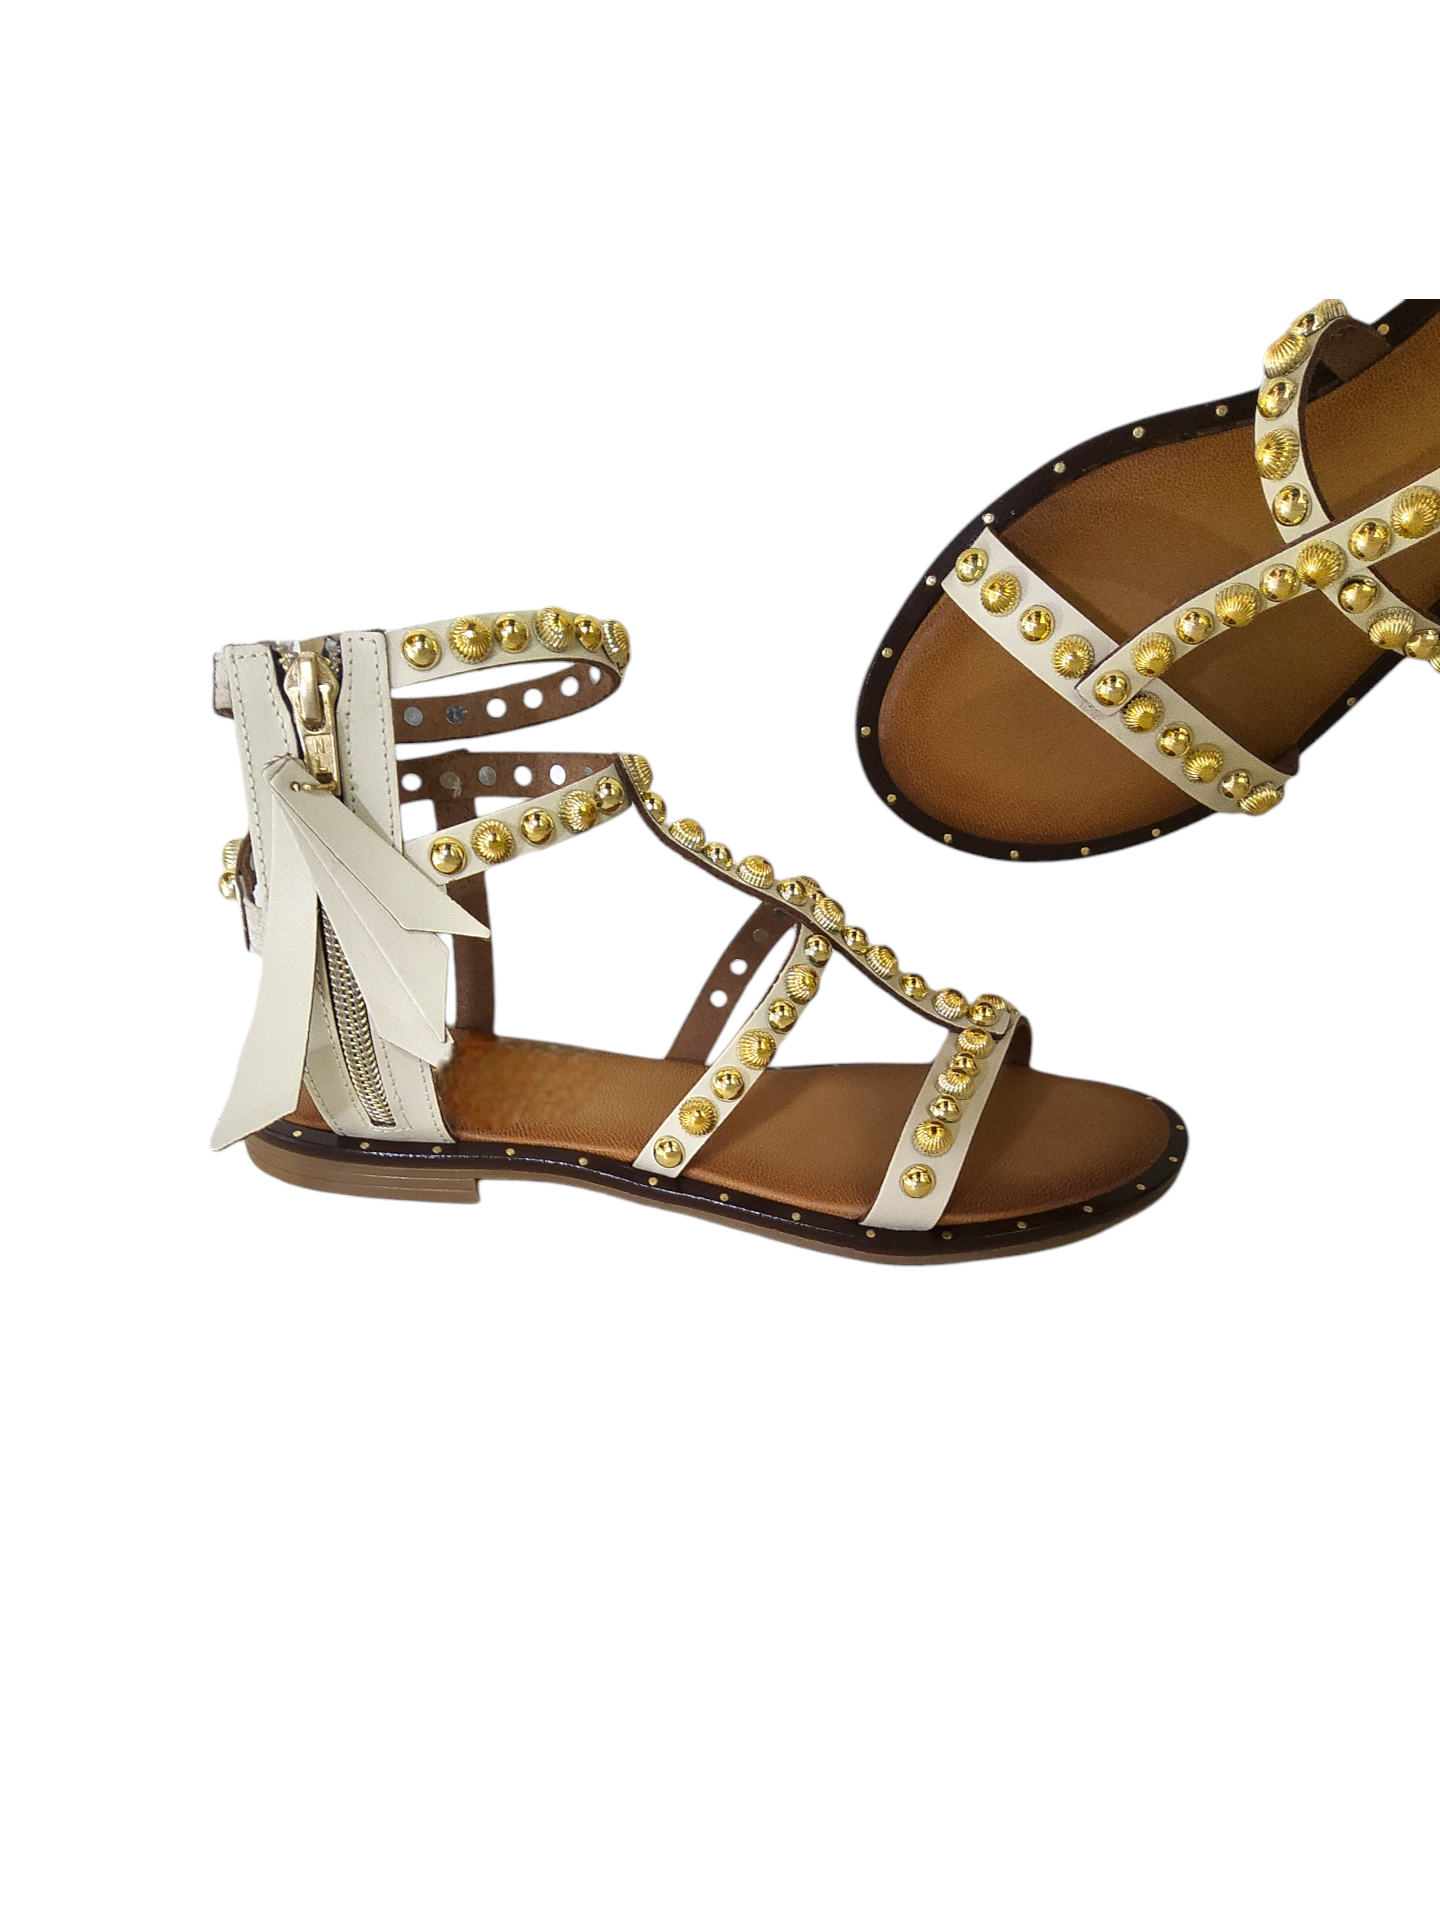 Cream leather gladiator sandals